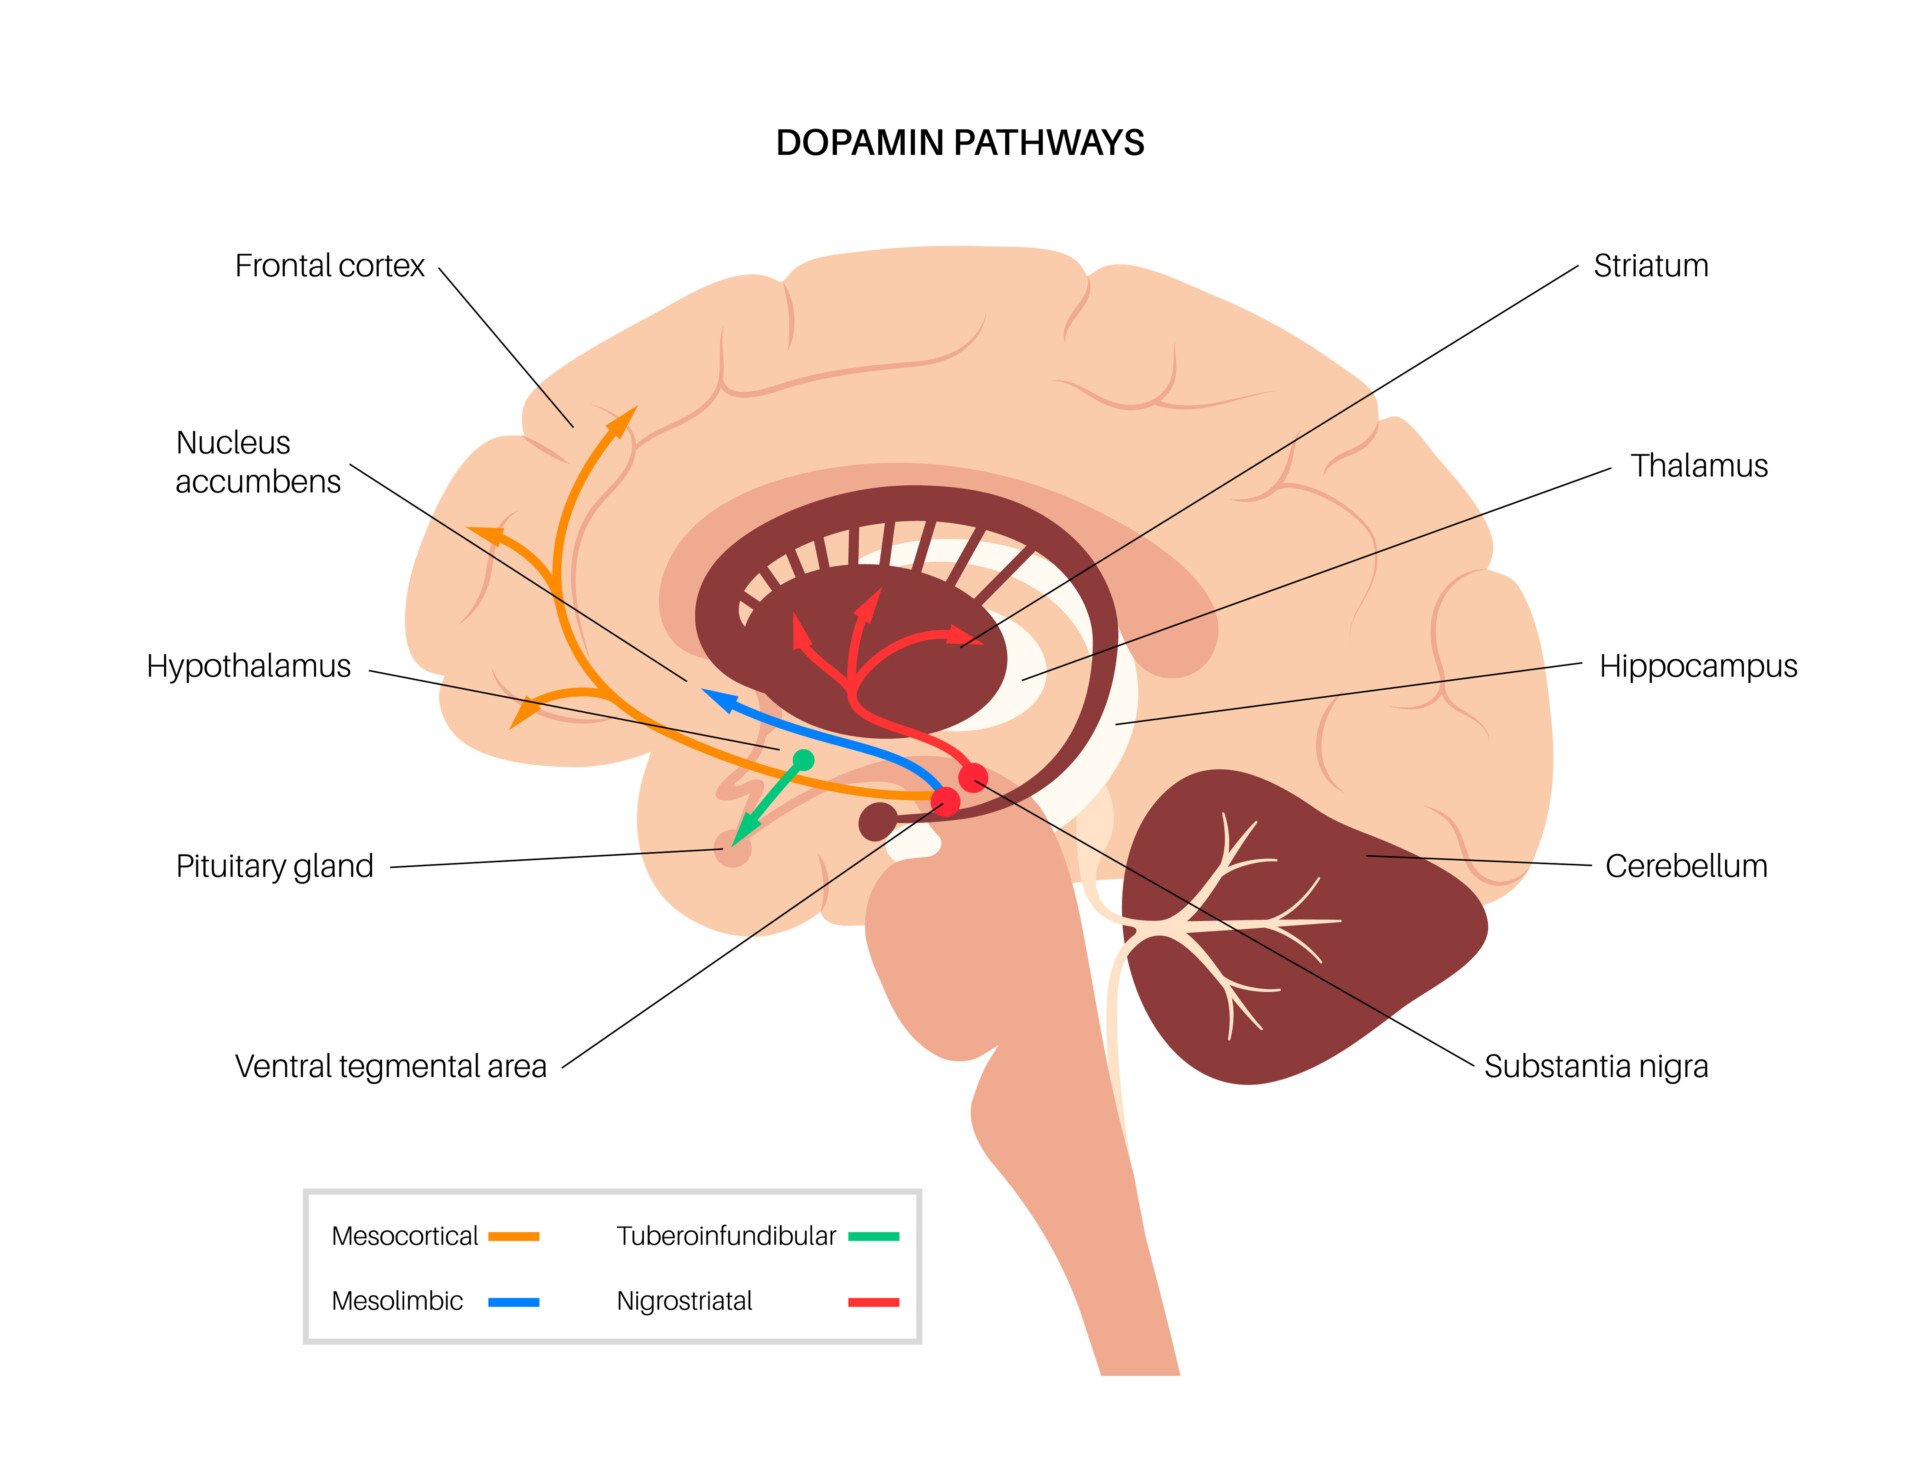 dopamine pathways